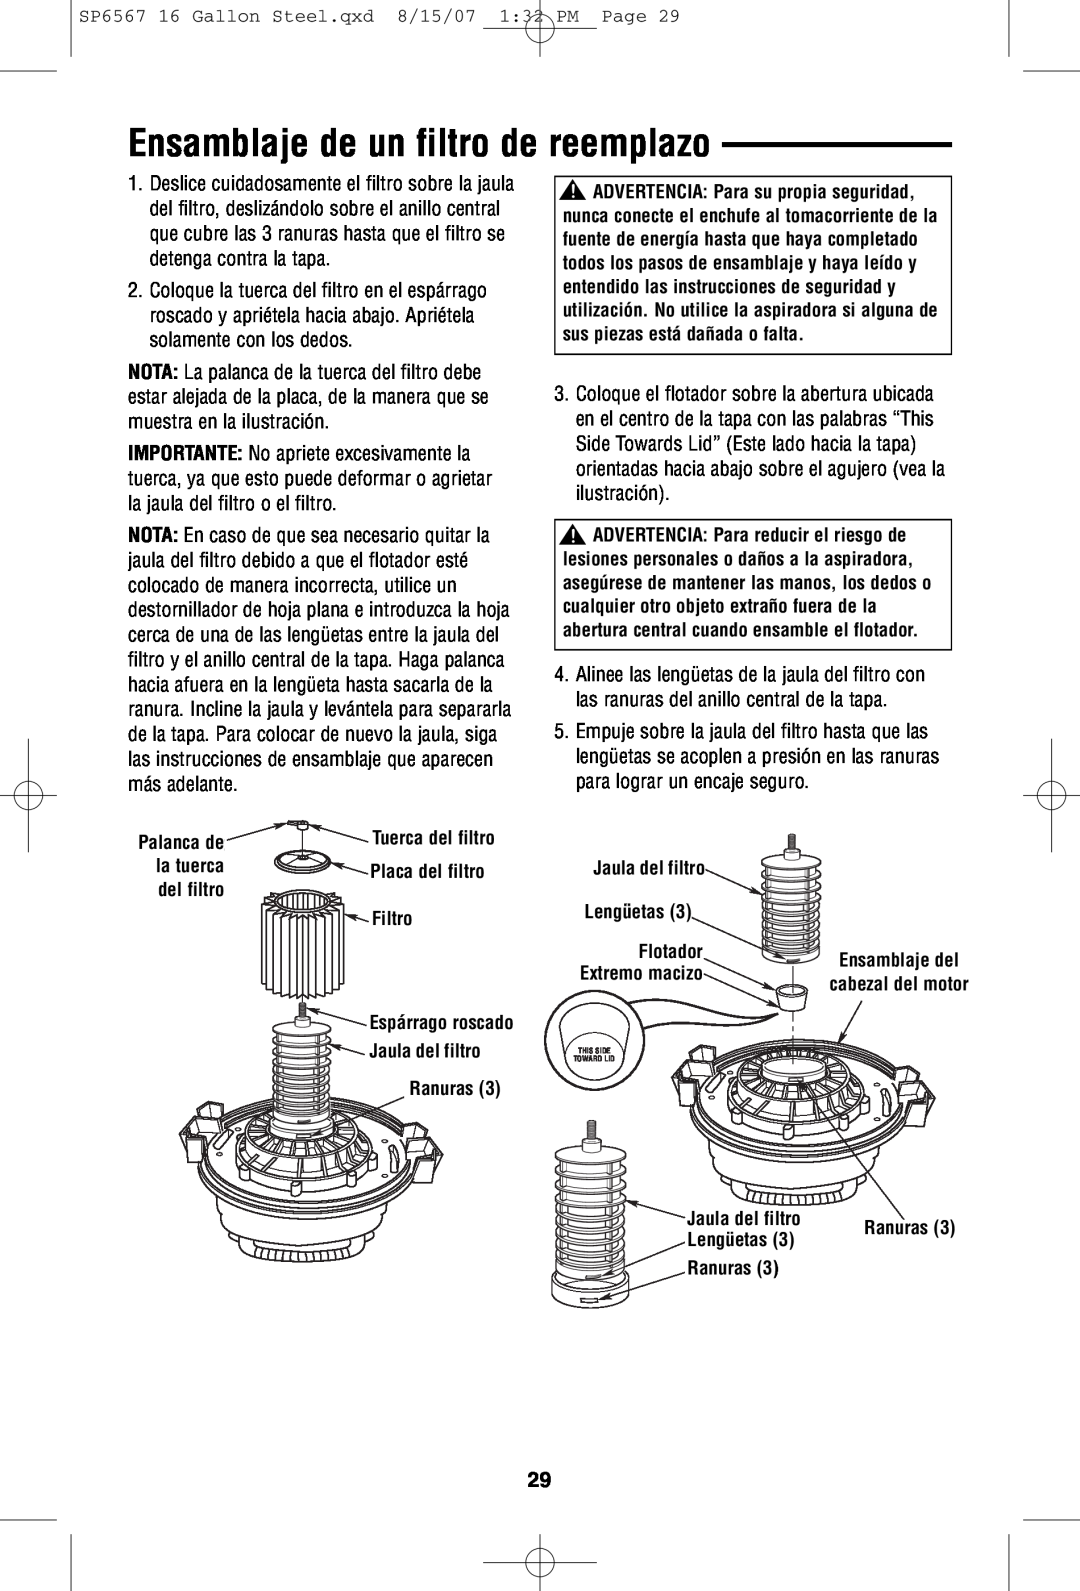 RIDGID WD1950 manual Ensamblaje de un filtro de reemplazo, Tuerca del filtro, Placa del filtro, Filtro, Espárrago roscado 